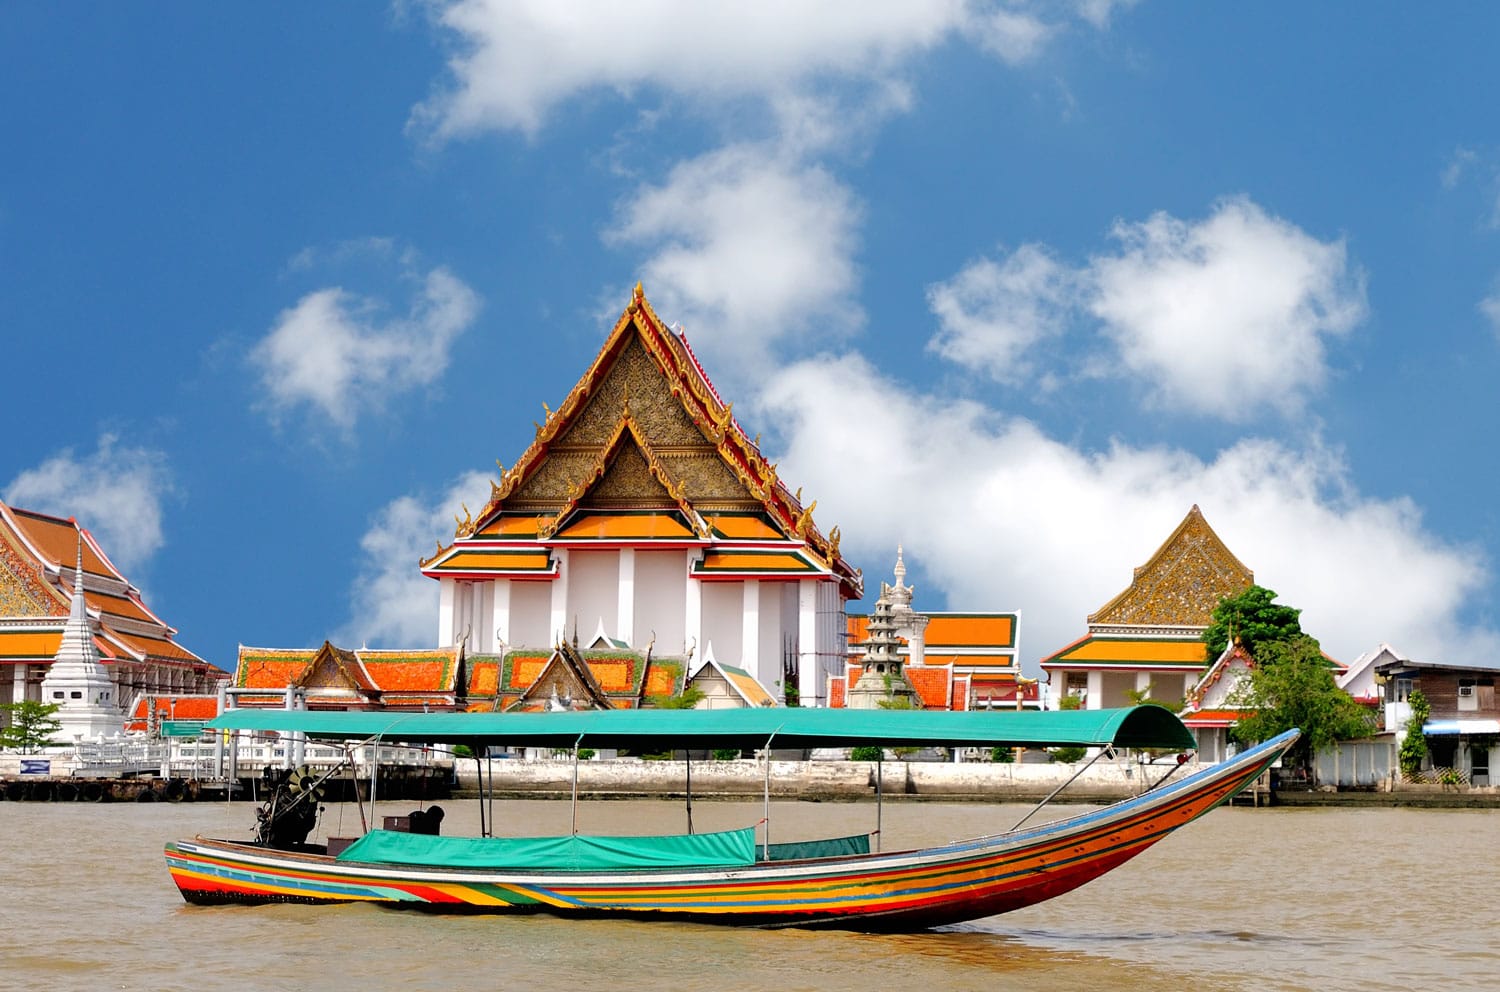 Βάρκα στον ποταμό Chao Phraya, Μπανγκόκ, Ταϊλάνδη